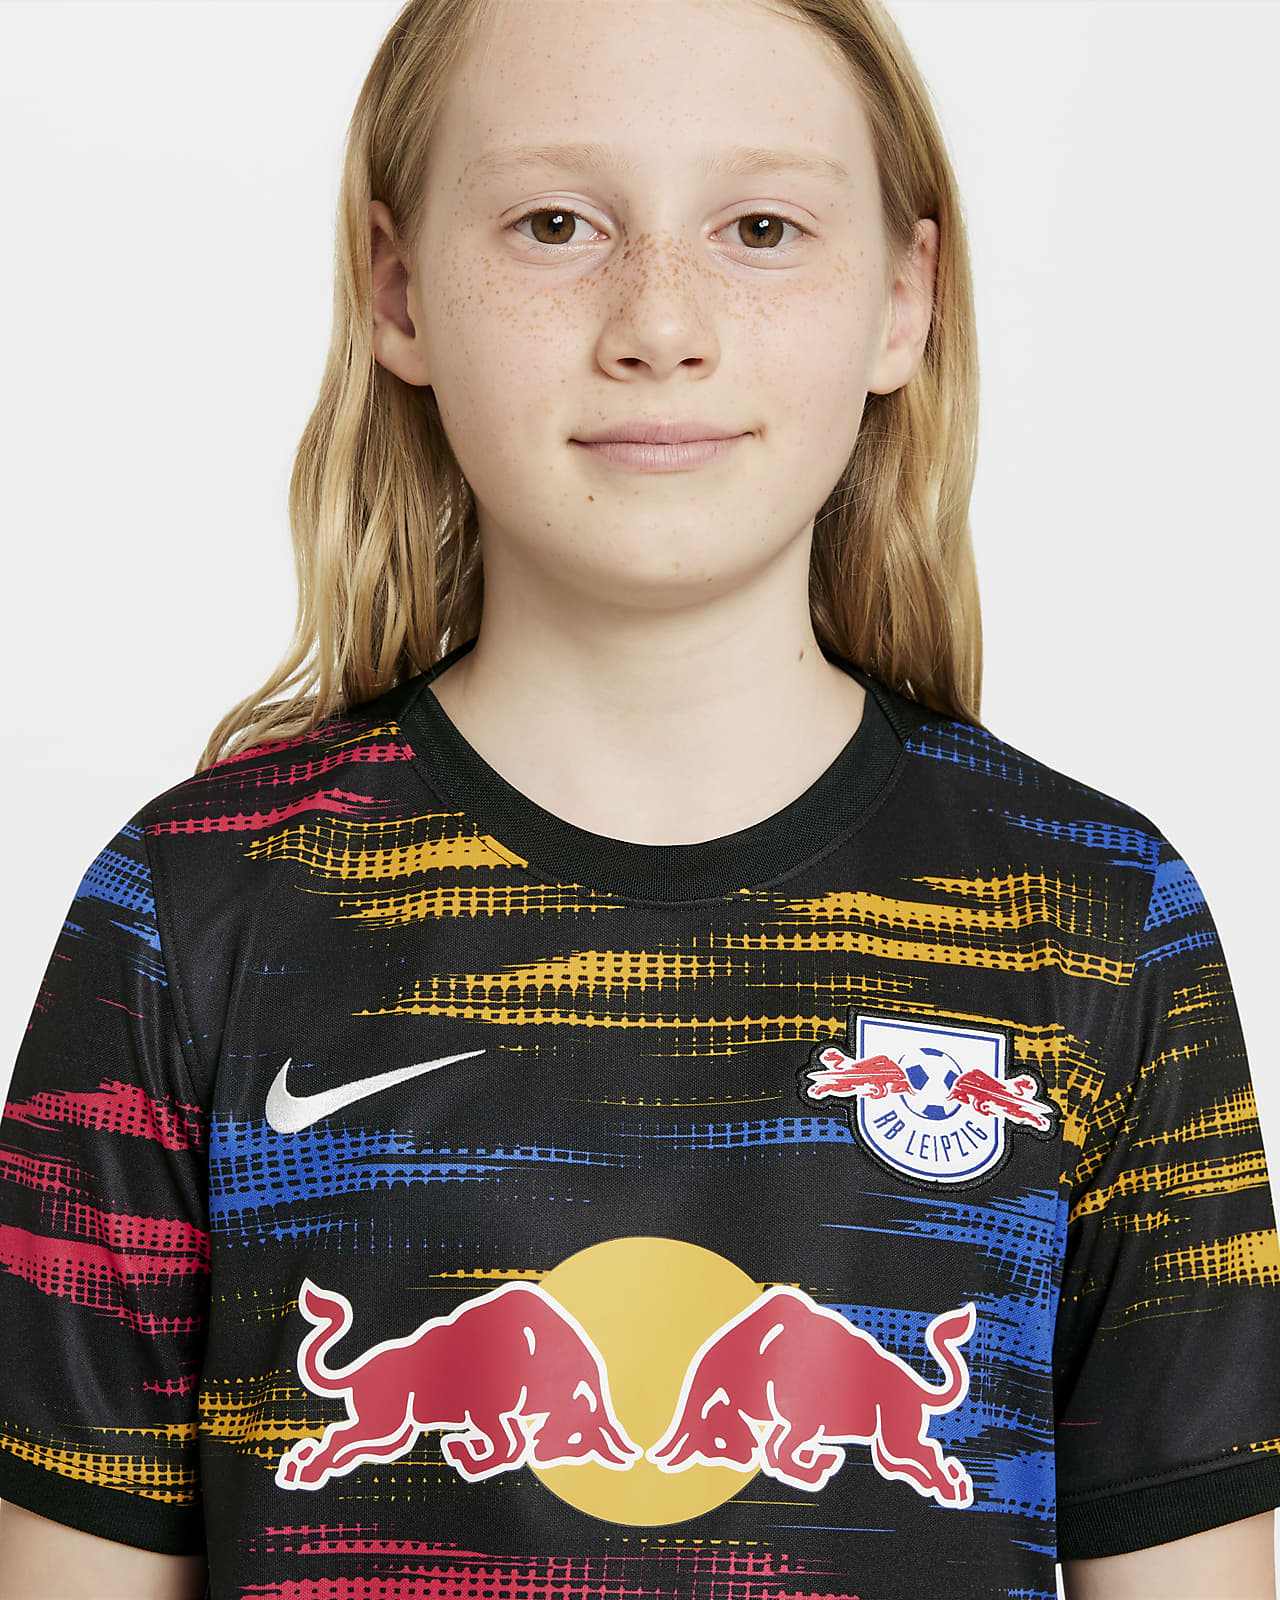 Rb Leipzig 2021 22 Stadium Away Older Kids Football Shirt Nike Lu [ 1600 x 1280 Pixel ]